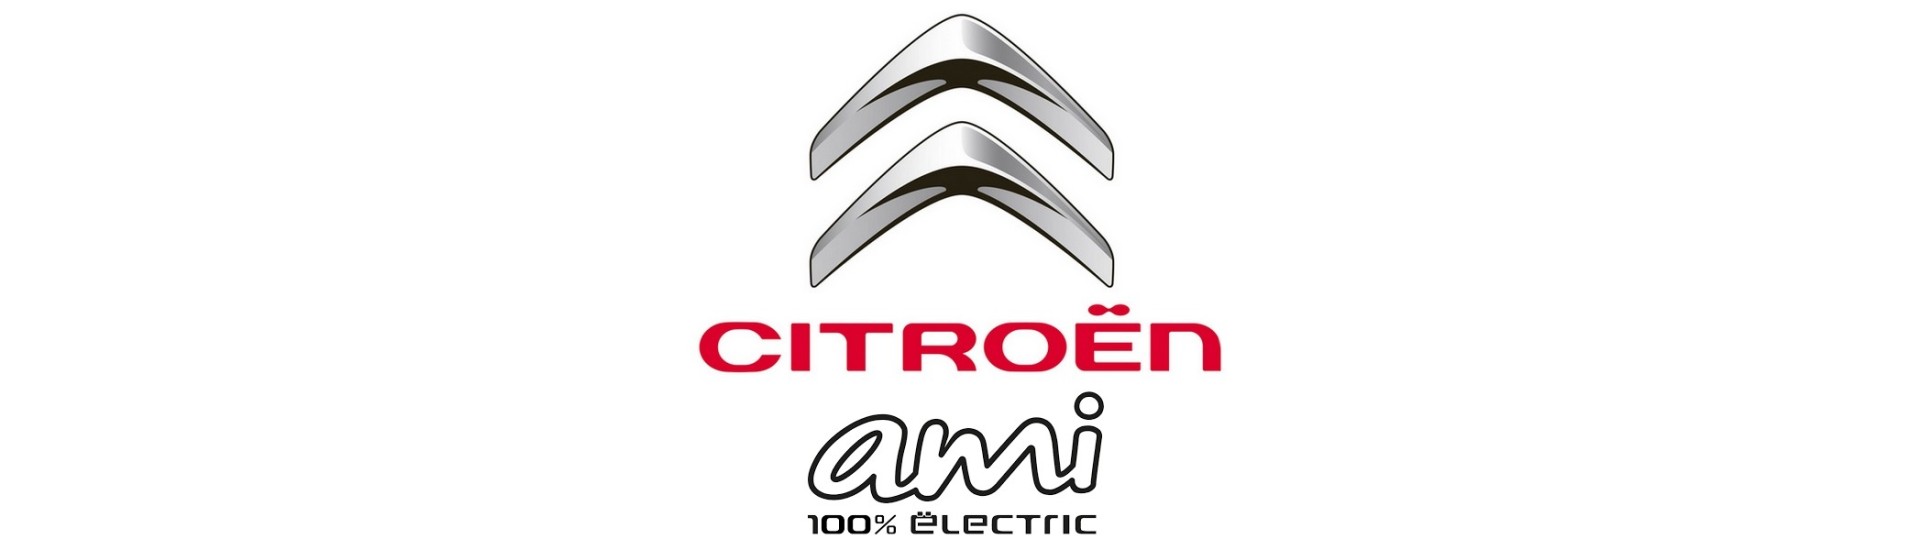 Motore elettrico al miglior prezzo per auto senza permesso Citroën